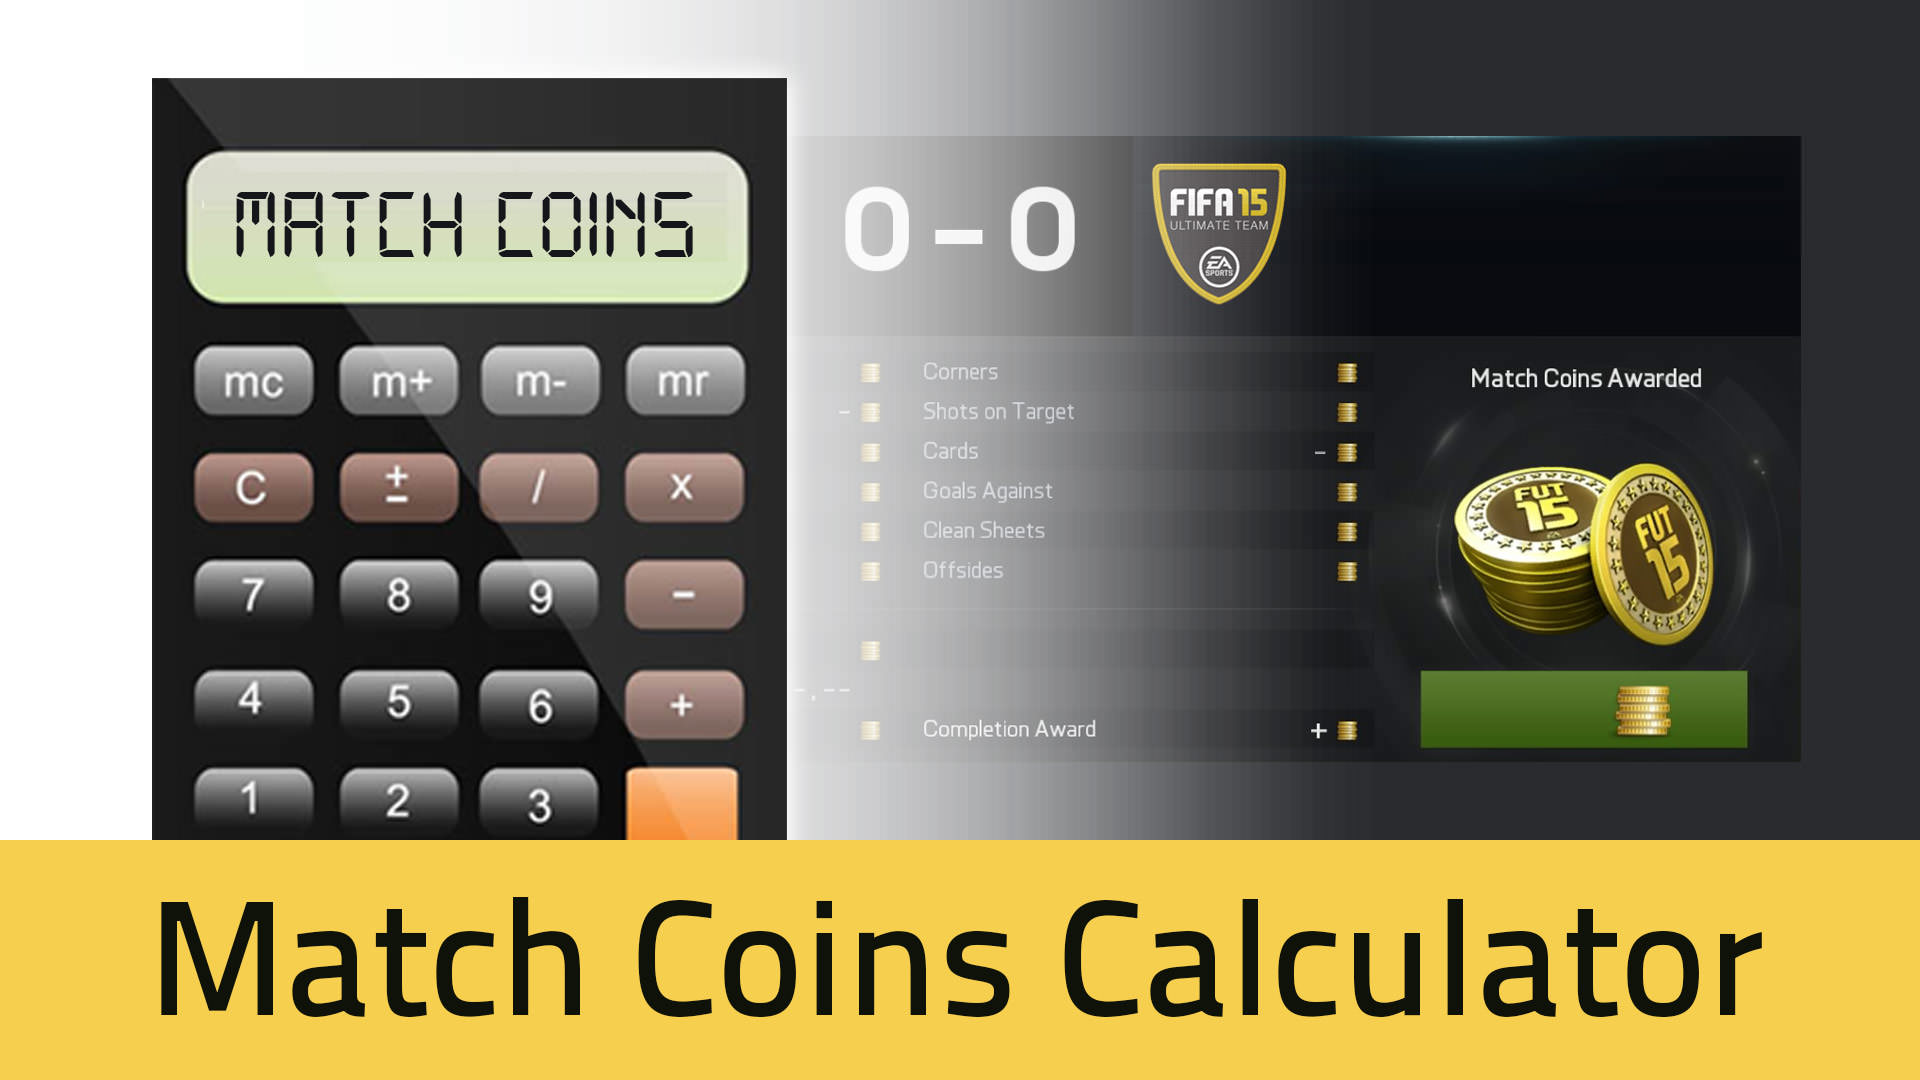 FUT 15 Match Coins Calculator